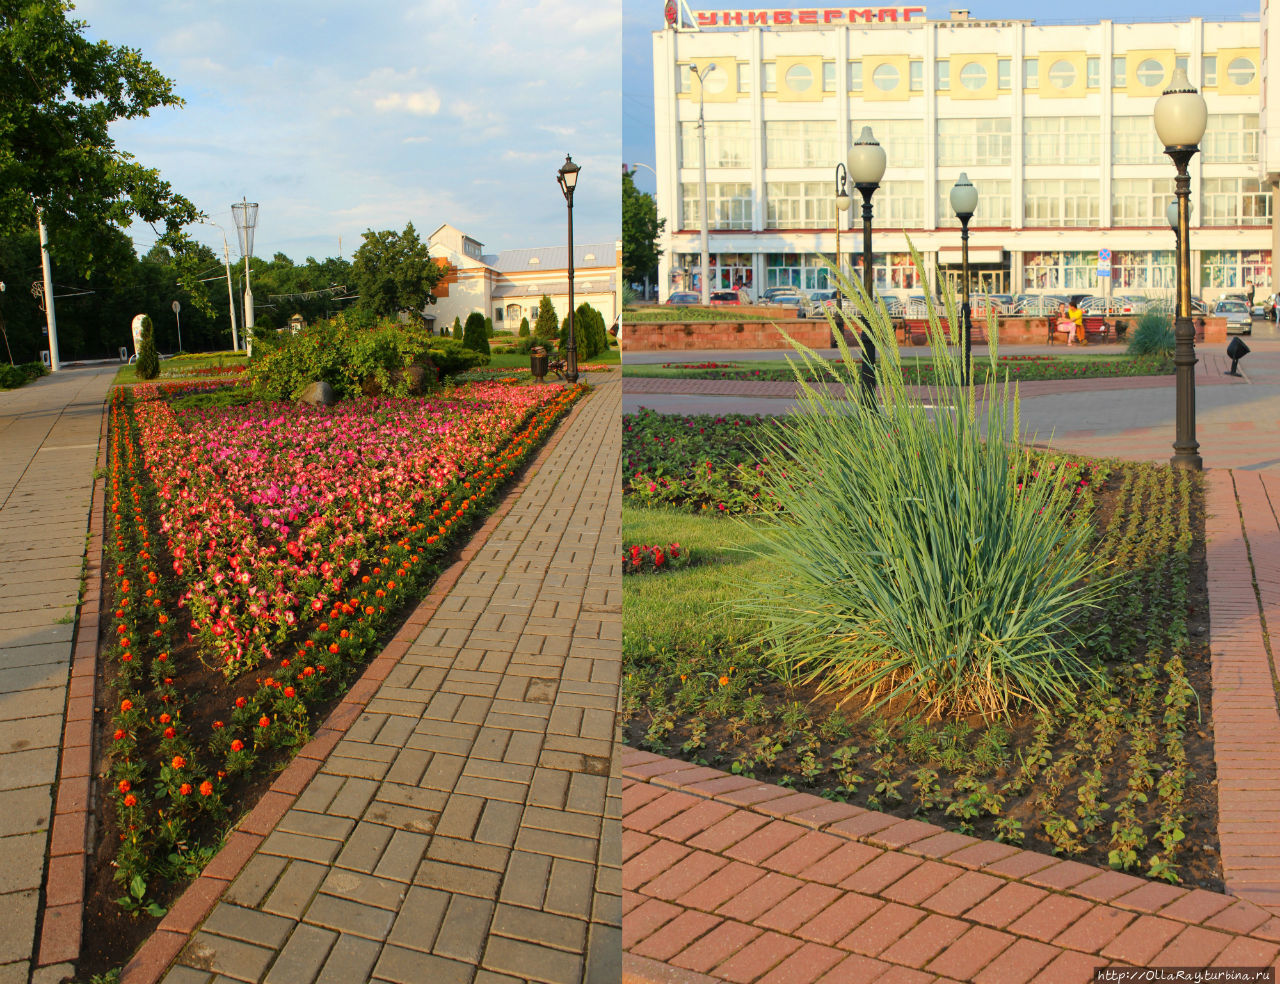 В городе много цветников, что, безусловно, делает облик города ярким и свежим. Витебск, Беларусь